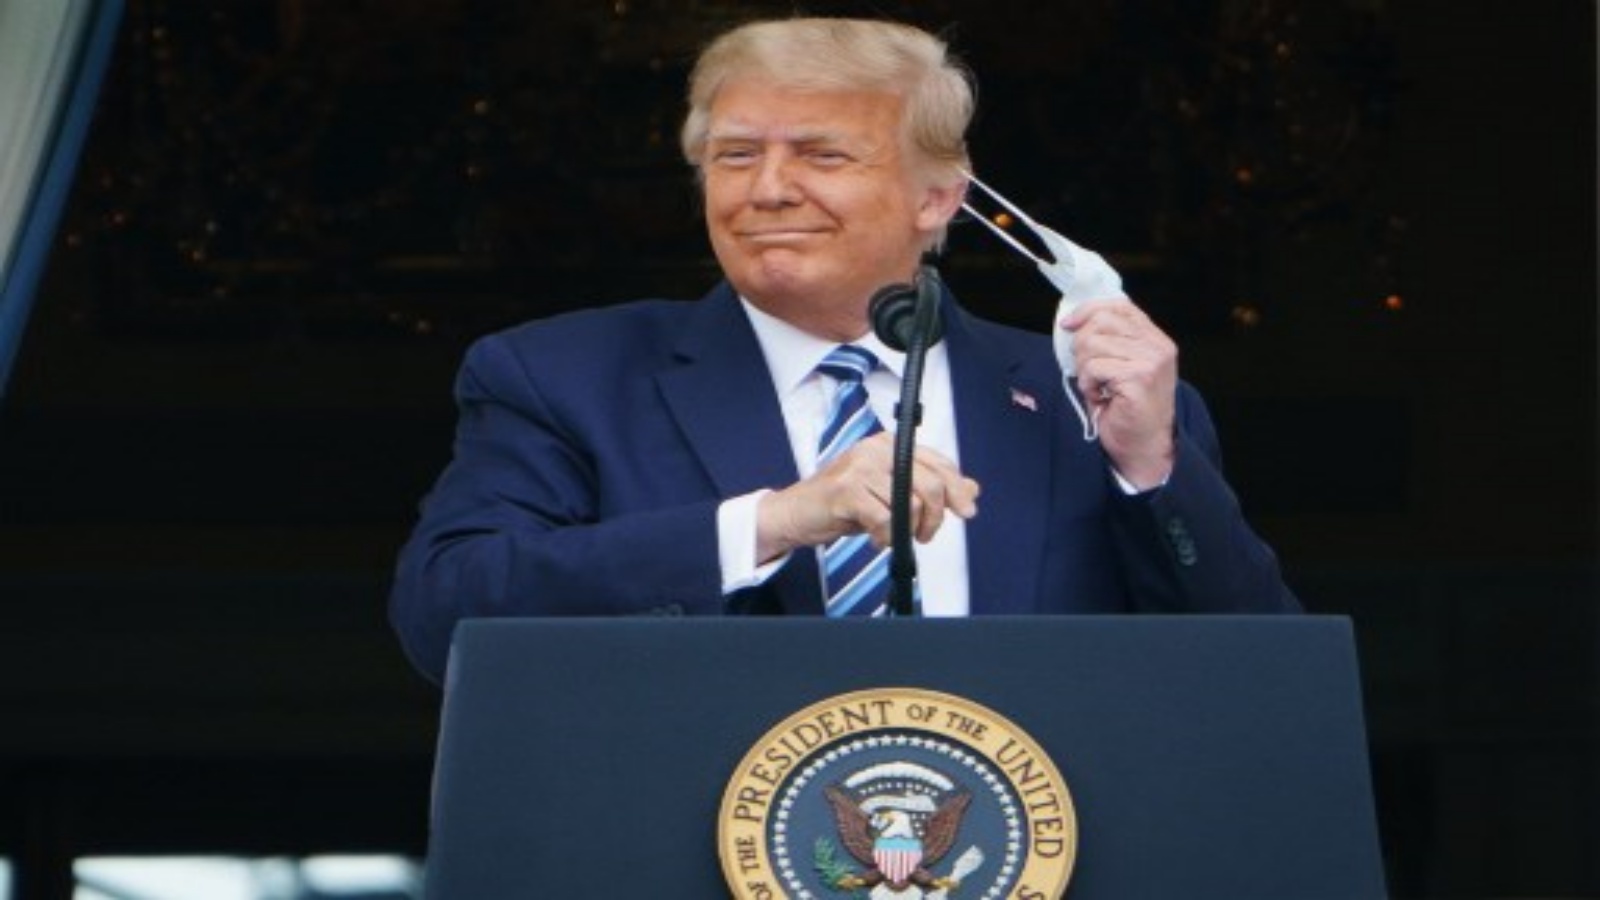 الرئيس الأمريكي دونالد ترمب يخلع قناعه قبل أن يتحدث من جنوب الرواق بالبيت الأبيض في واشنطن العاصمة خلال تجمع حاشد في 10 أكتوبر 2020